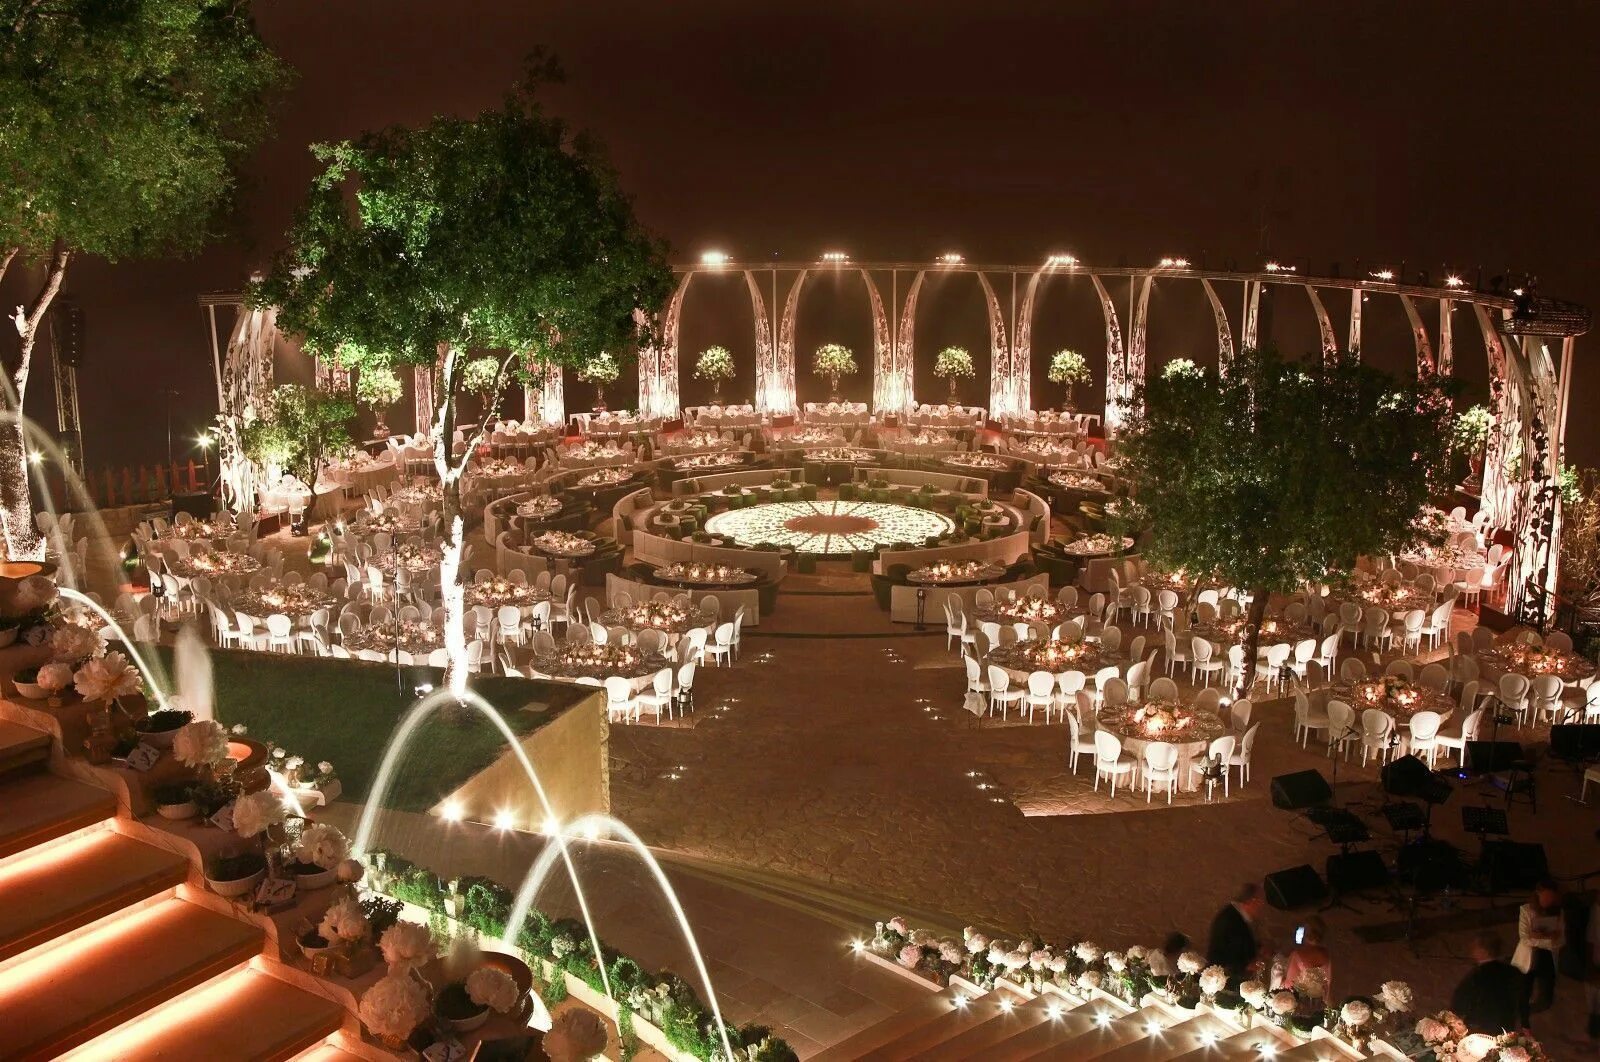 Свадьба в стиле Дубаи. Illumination Garden. Wedding Garden Dubai. Королевская свадьба в ОАЭ проволочная инсталляция. Amazing event